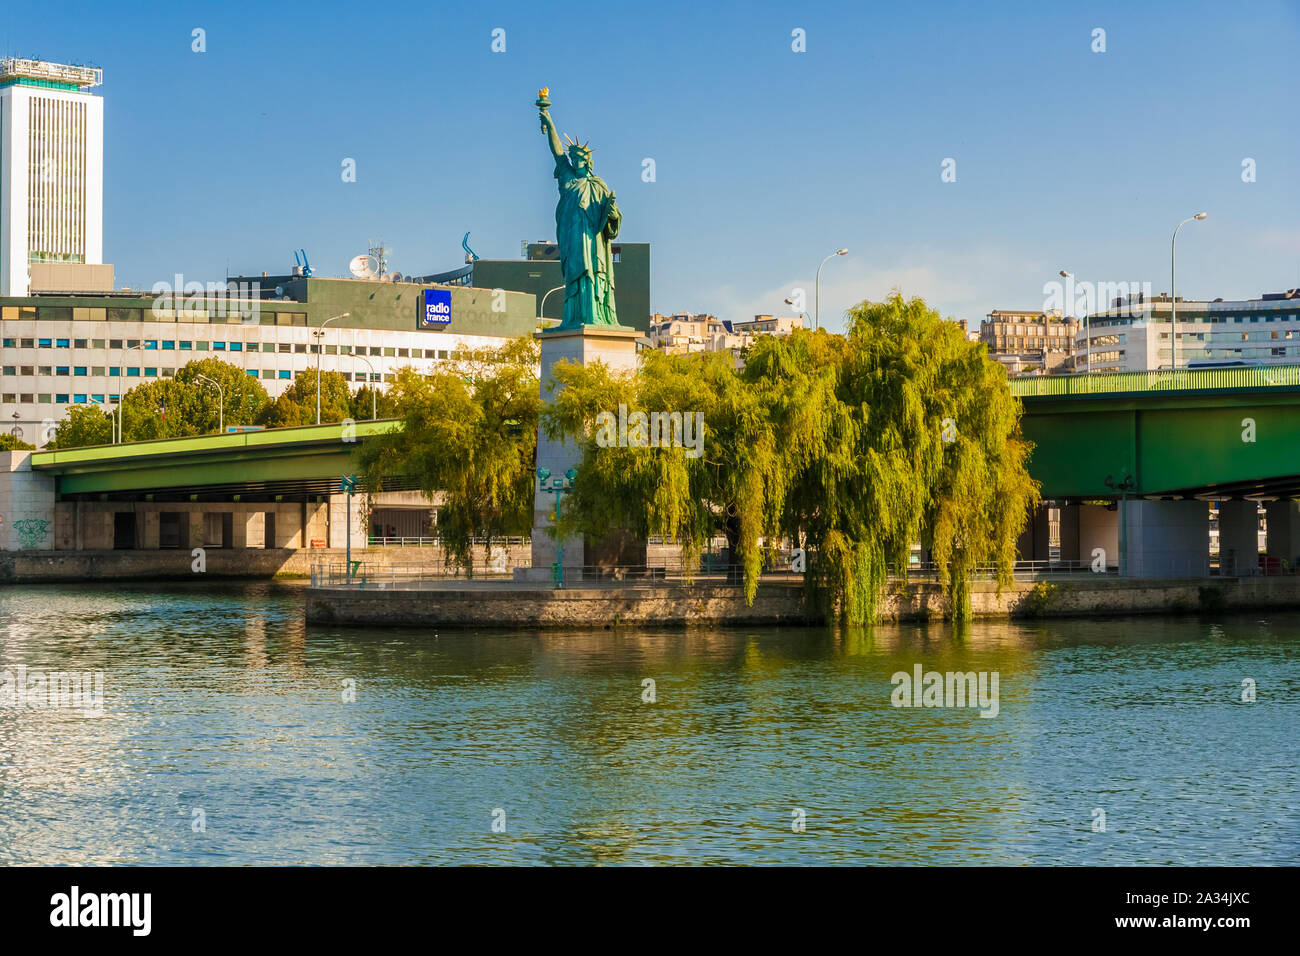 Superbe vue panoramique sur la Statue de la liberté réplique entouré de saules des arbres sur l'Île aux cygnes, une petite île artificielle sur la Seine... Banque D'Images